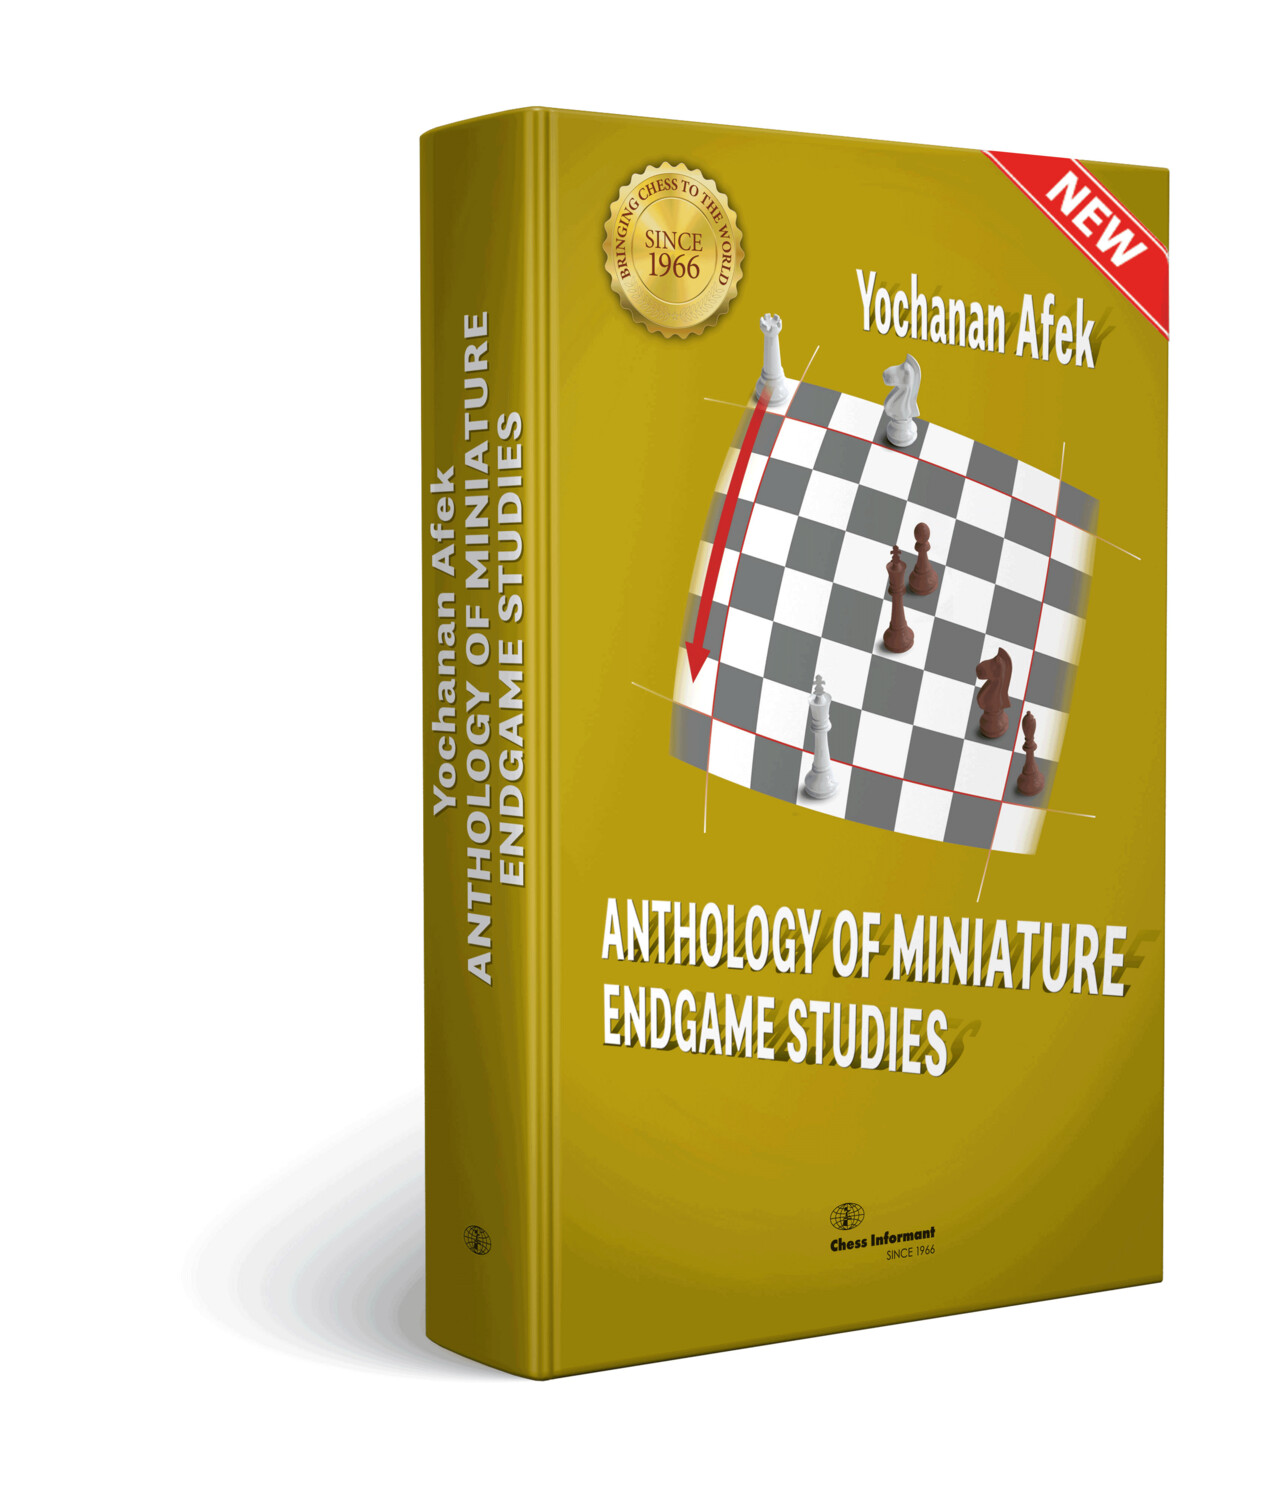 Anthology of Miniature Endgame Studies by Yochanan Afek